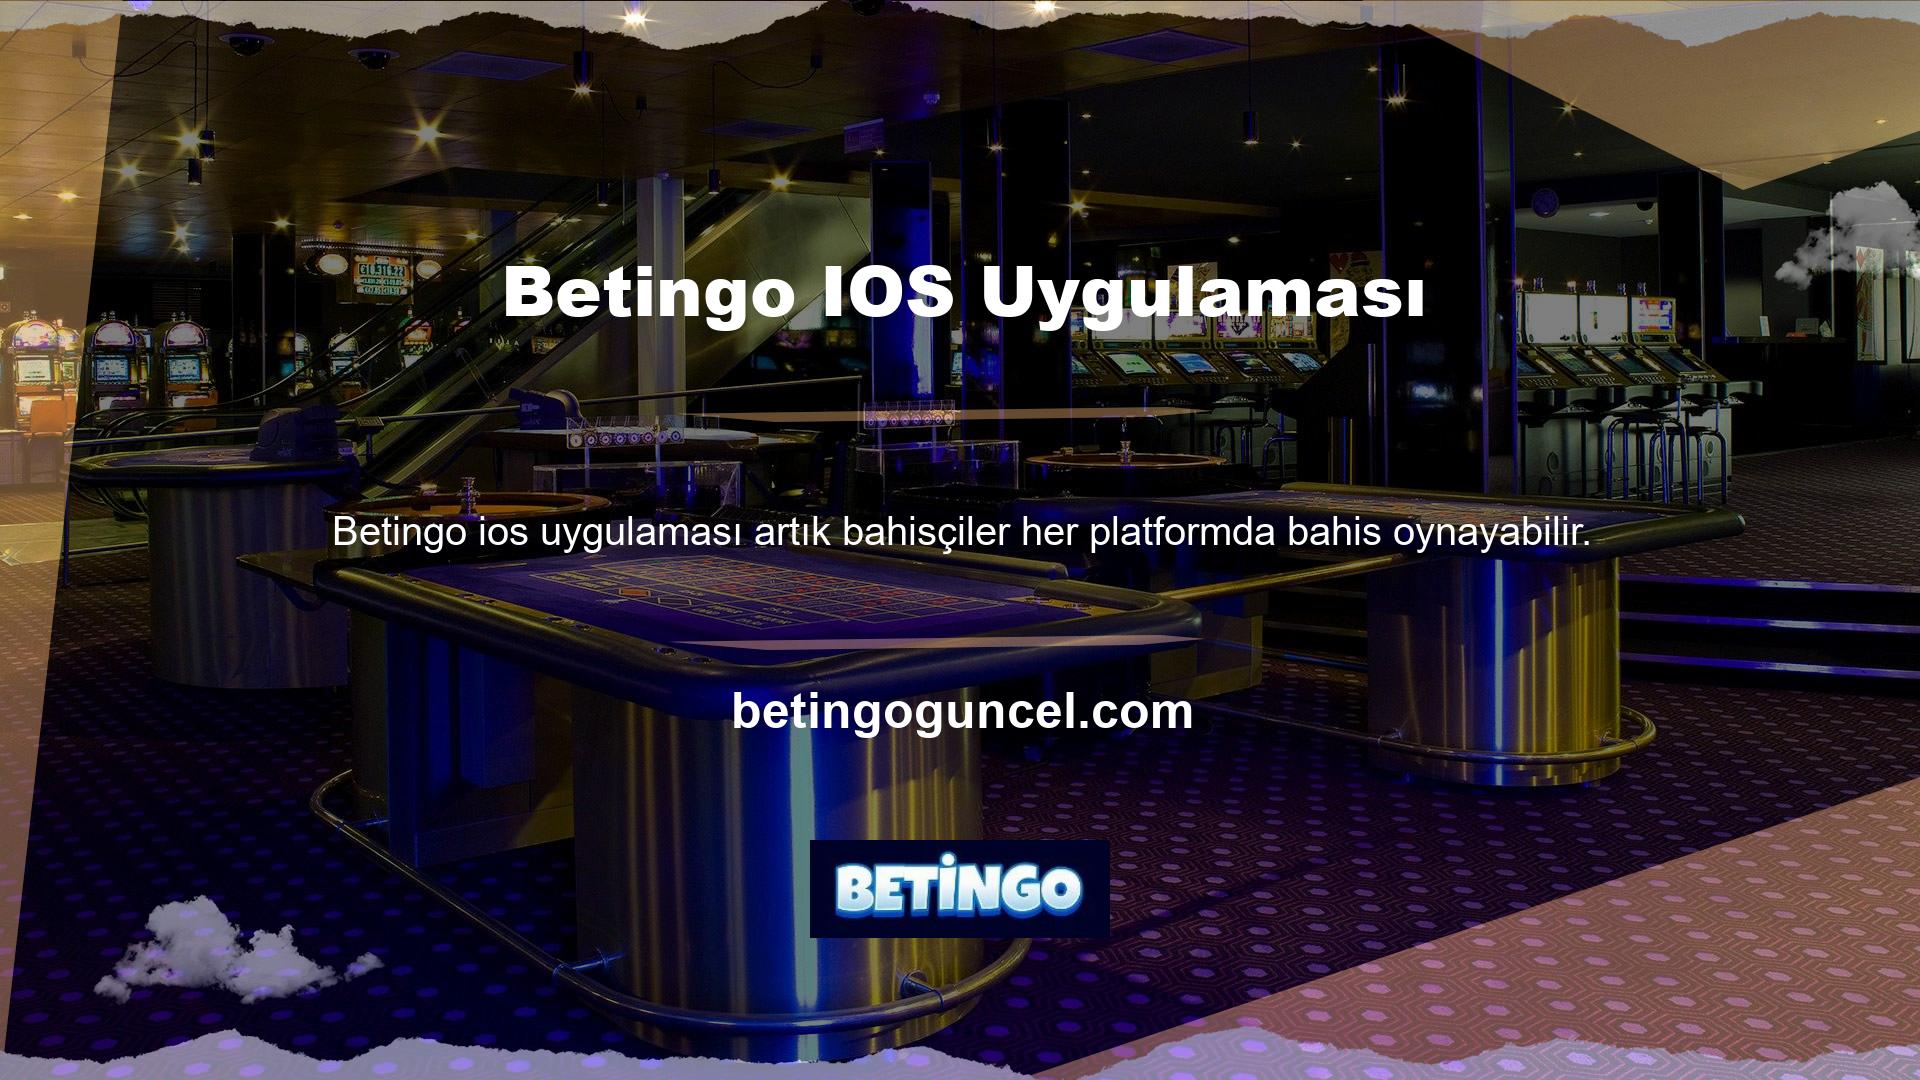 İnternet üzerinden sunulan Betingo bahis siteleri artık mobil platformlarda da bahis yapmaktadır